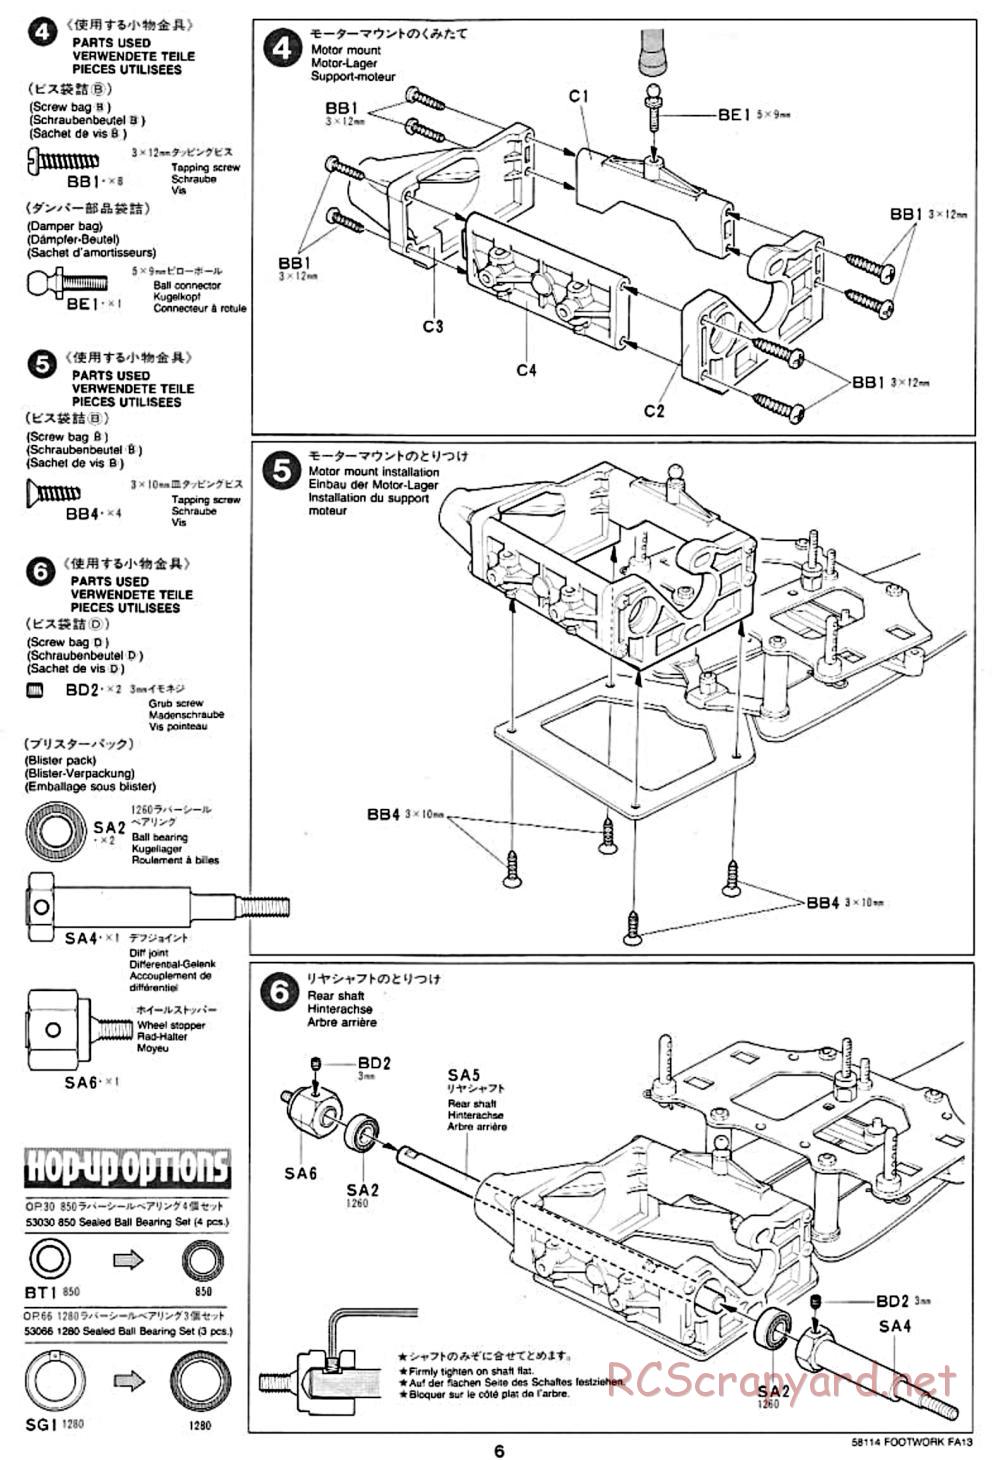 Tamiya - Footwork FA13 Mugen Honda - F102 Chassis - Manual - Page 6